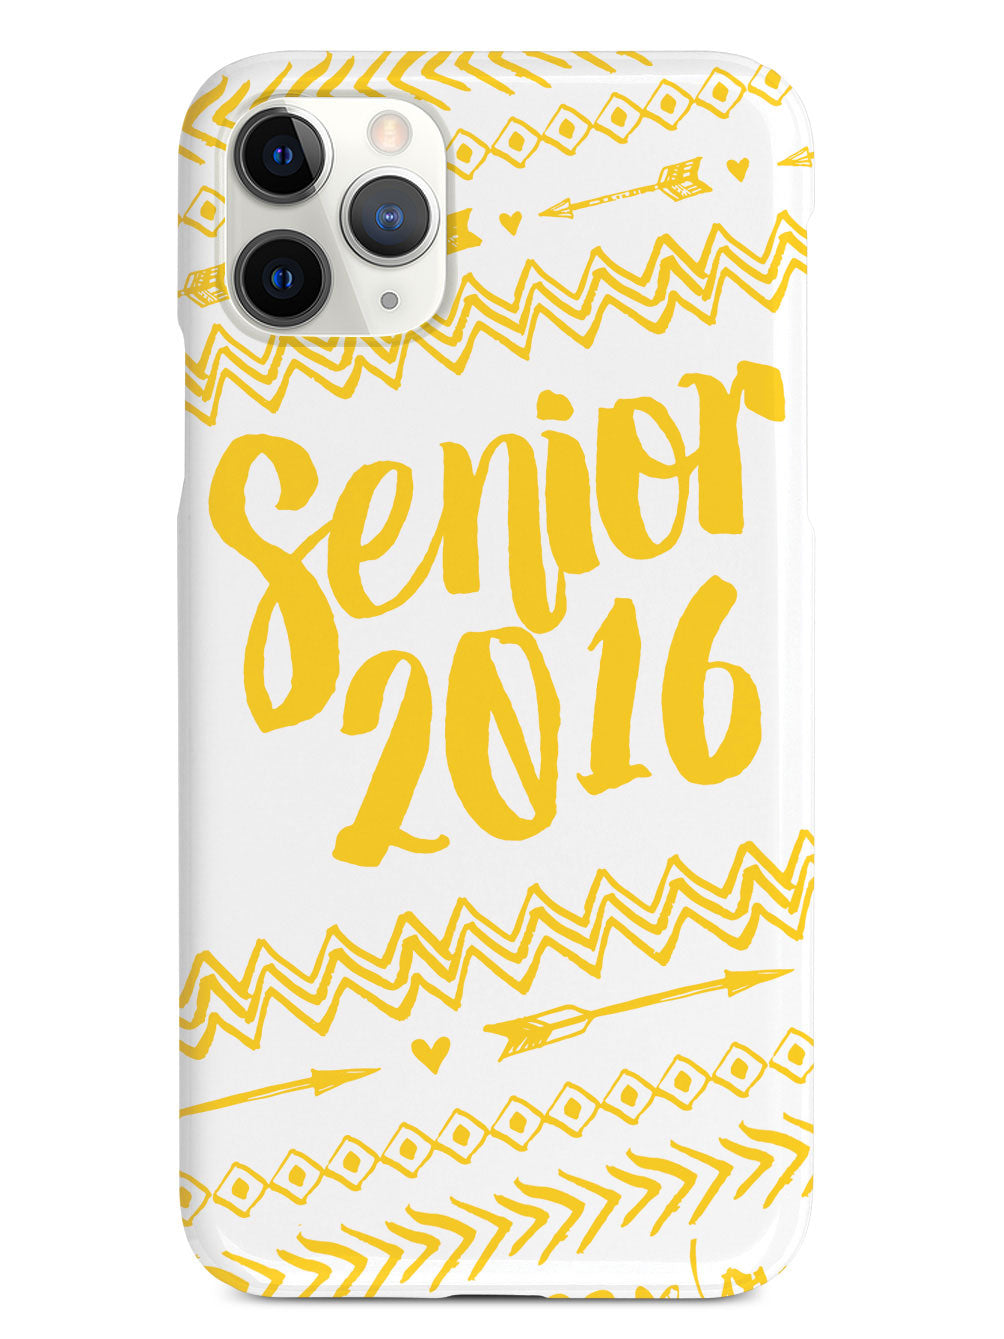 Senior 2016 - Yellow Case